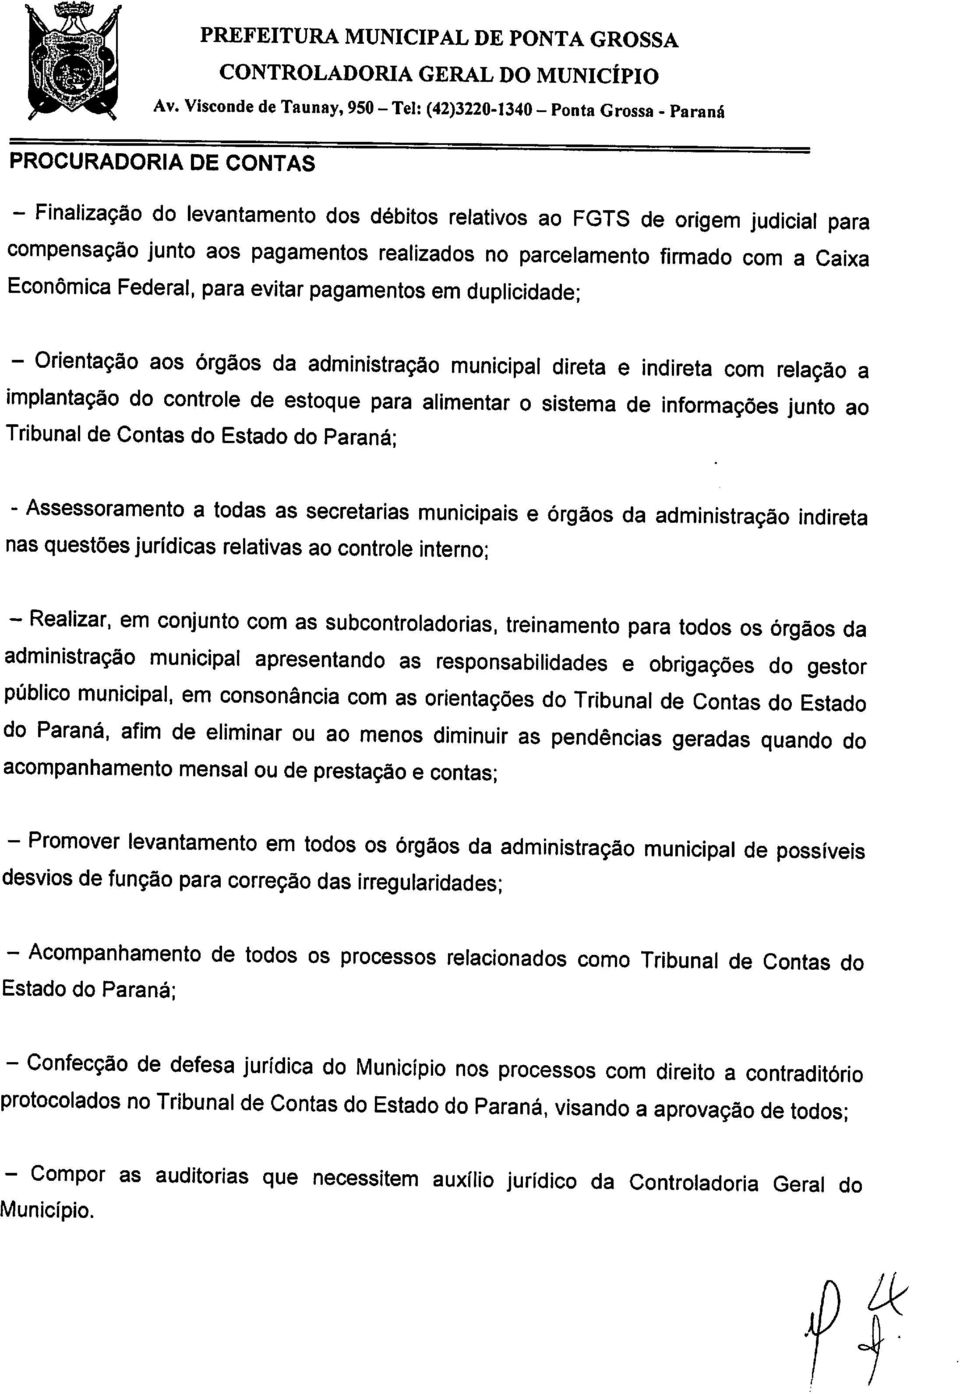 informações junto ao Tribunal de Contas do Estado do Paraná; - Assessoramento a todas as secretarias municipais e órgãos da administração indireta nas questões jurídicas relativas ao controle